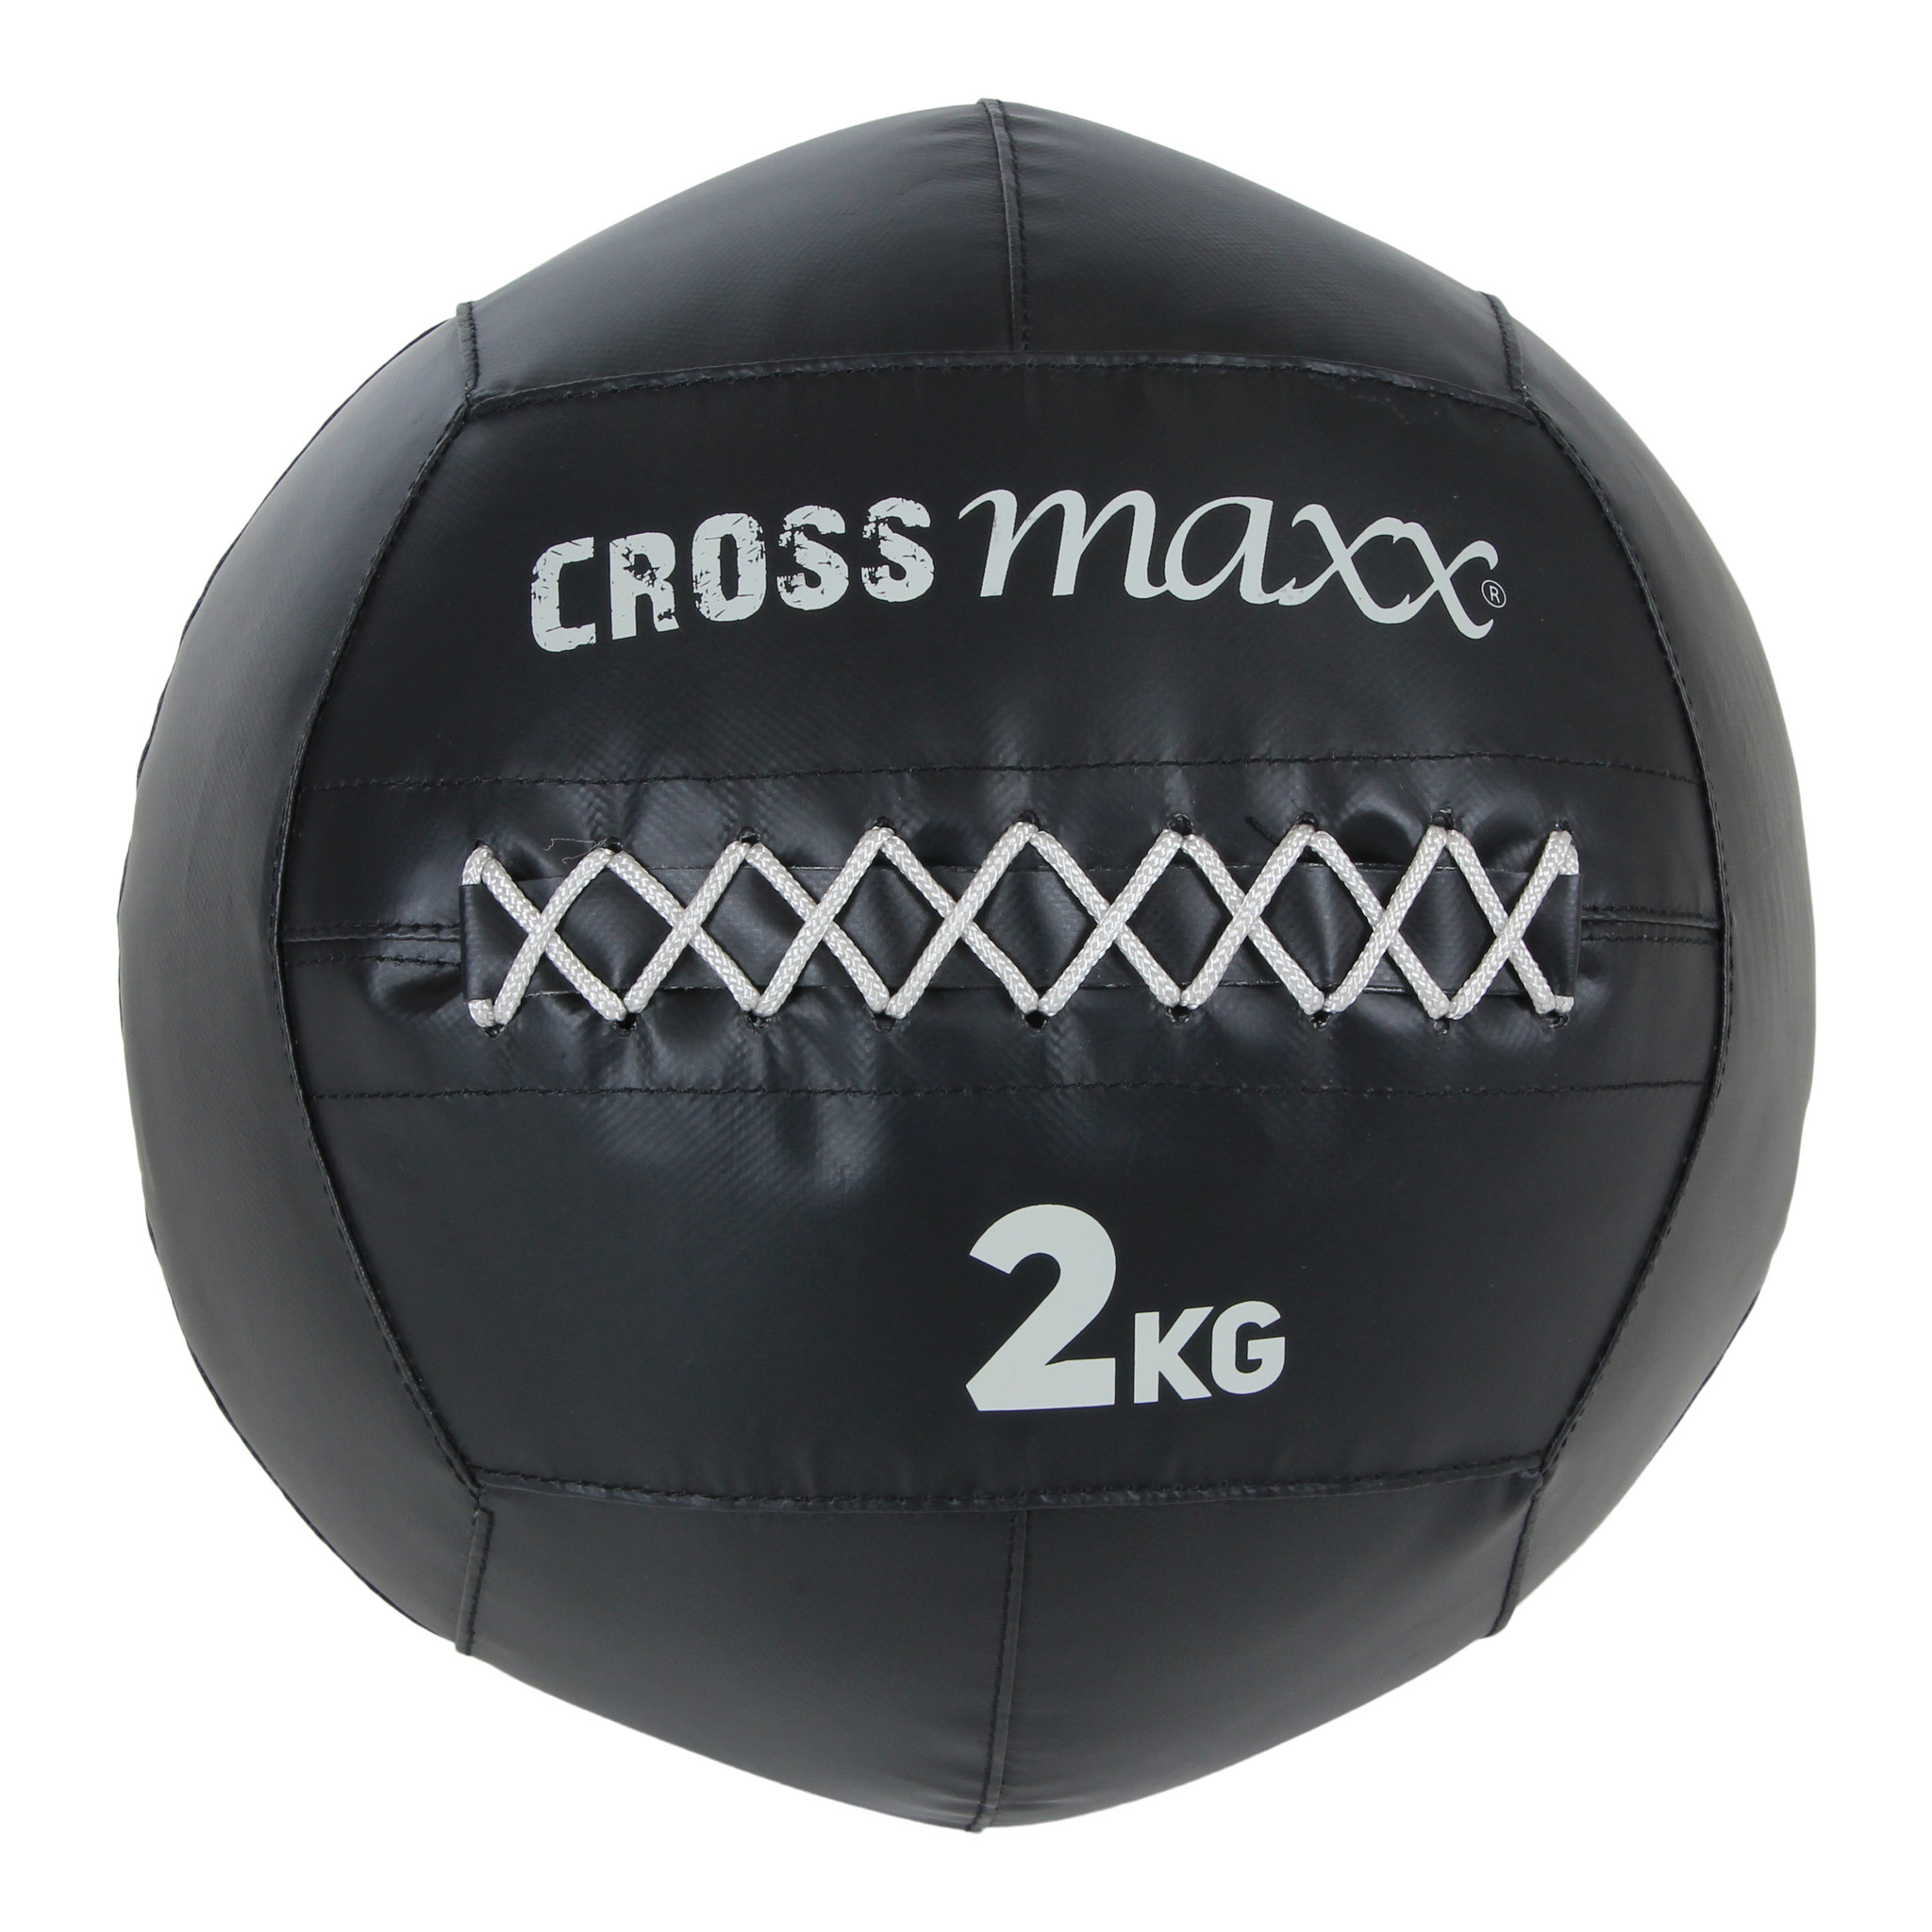 Crossmaxx PRO Wall Ball 6 kg